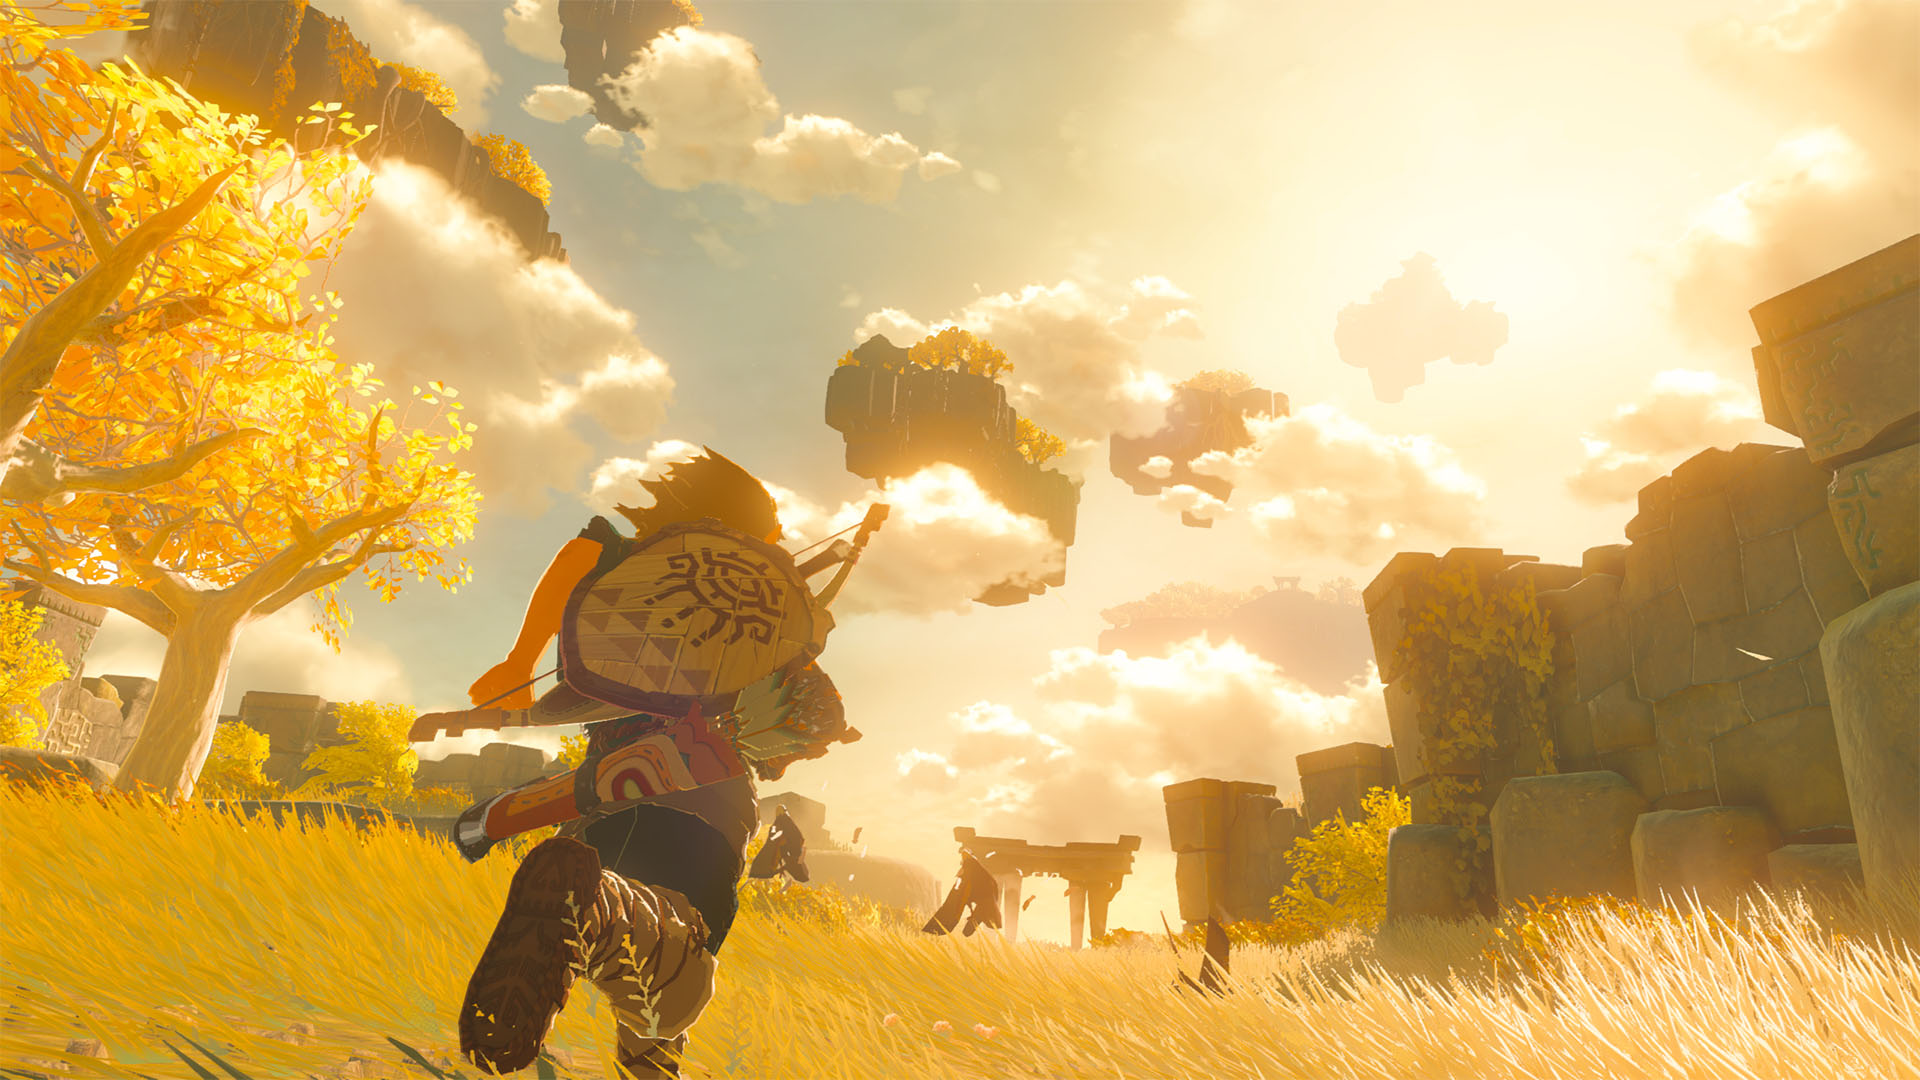 نام رسمی بازی The Legend of Zelda: Breath of the Wild 2 به داستان آن اشاره دارد